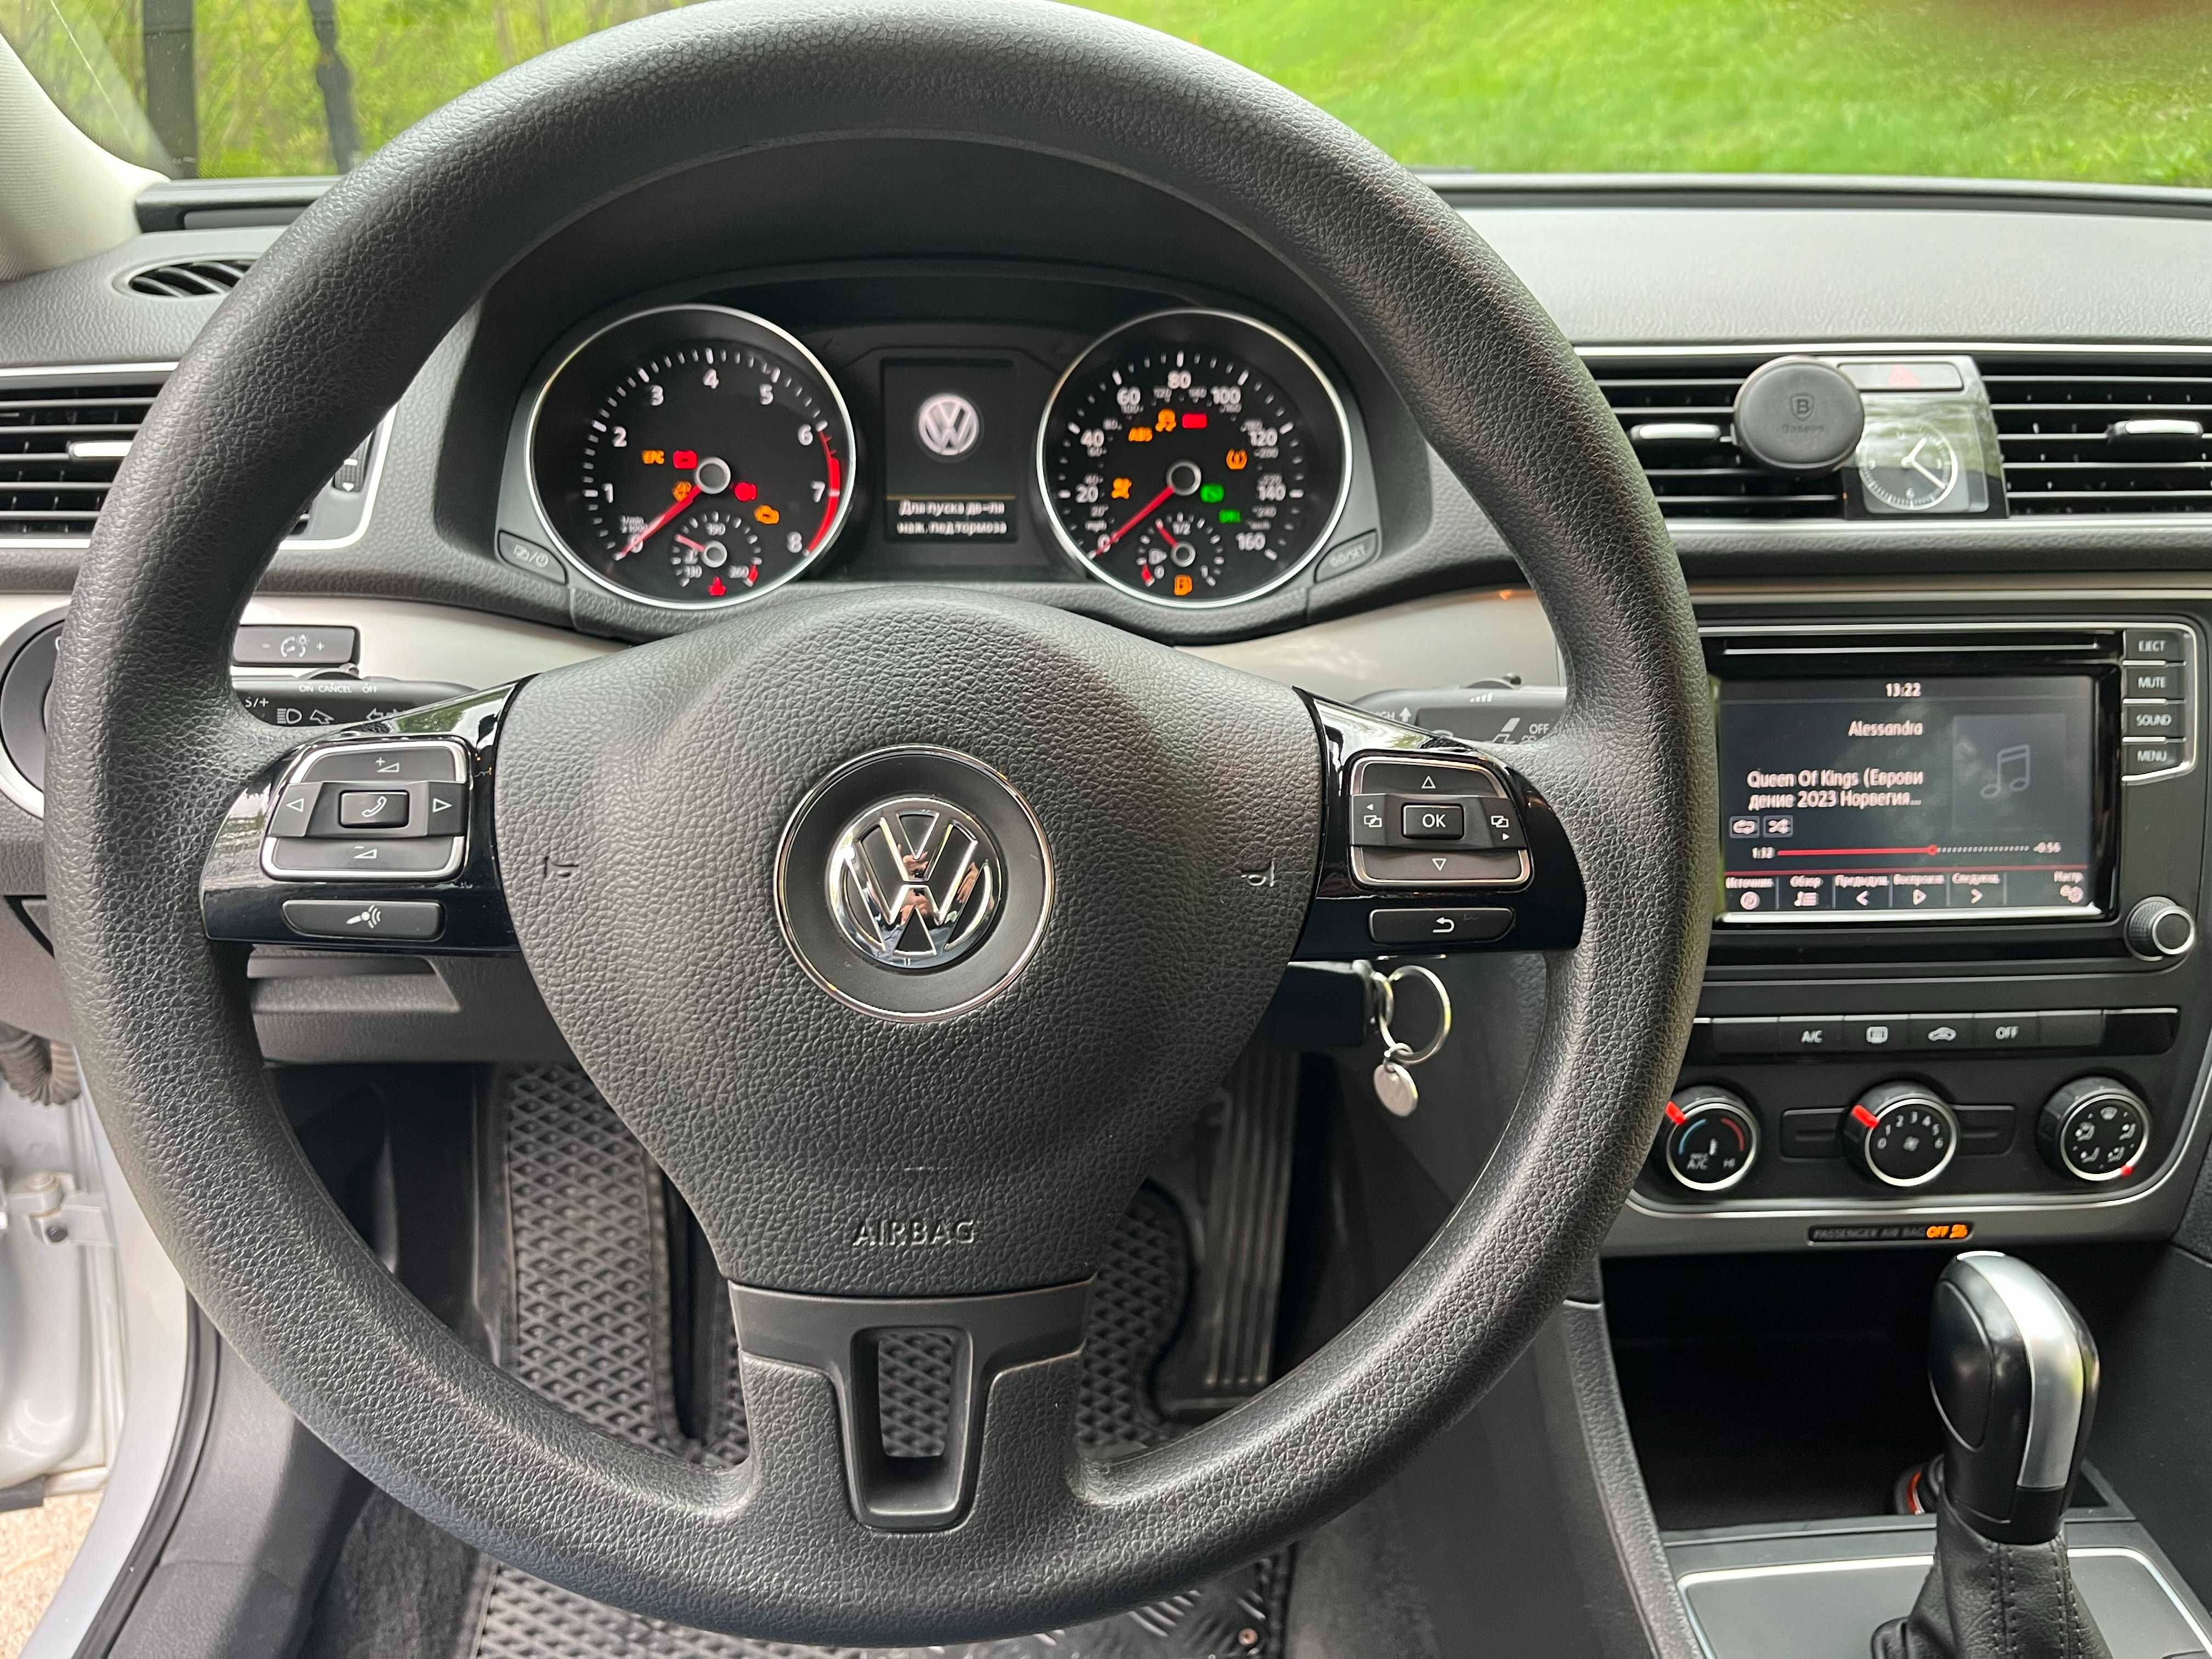 Volkswagen Passat 2015 USA